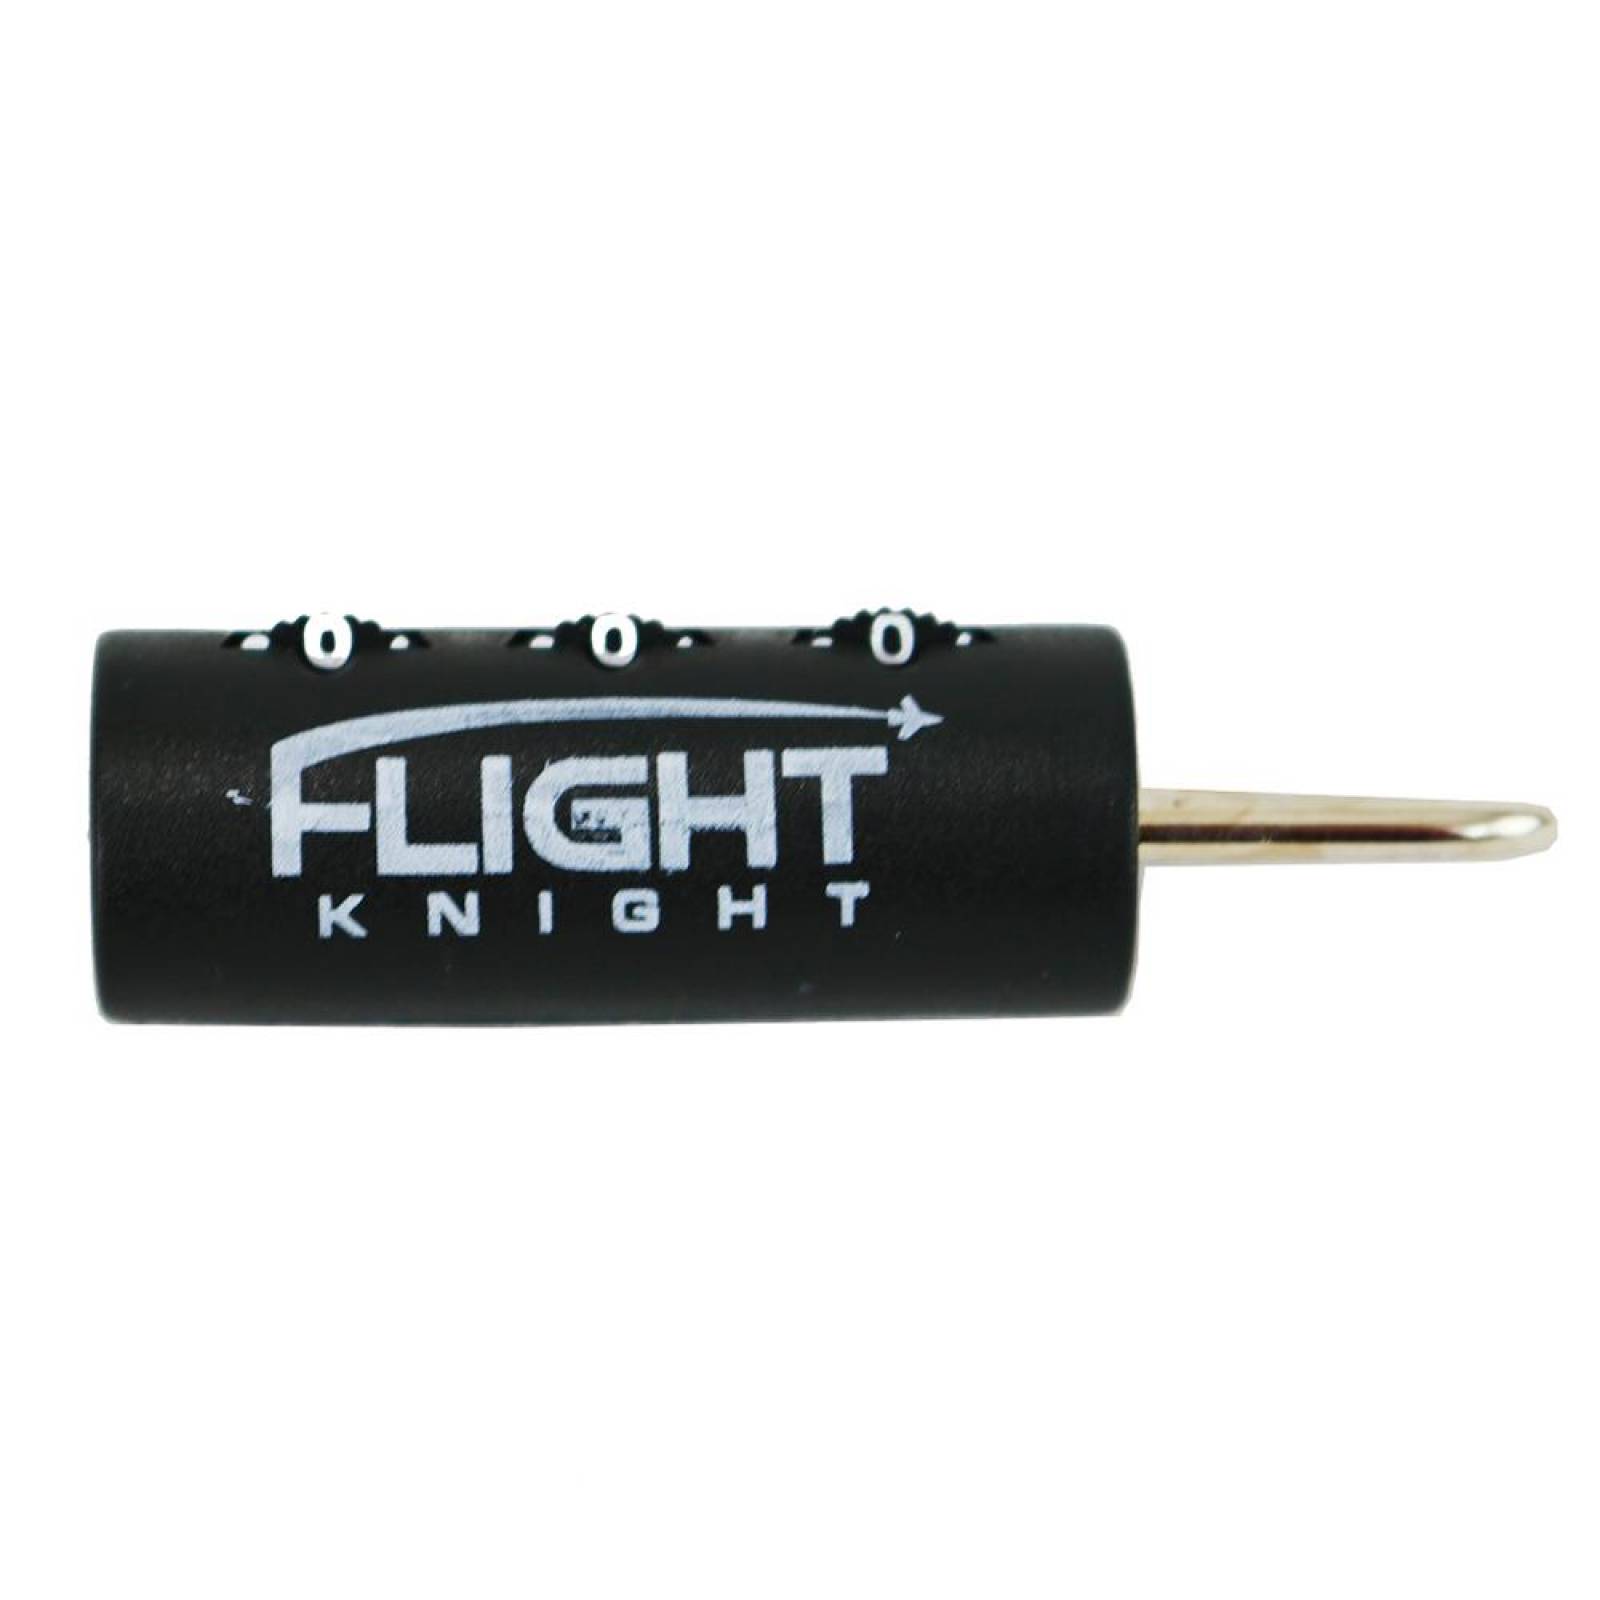 Maleta de mano de 16 Plgadas Flight Knight 2 ruedas (CL) Negro